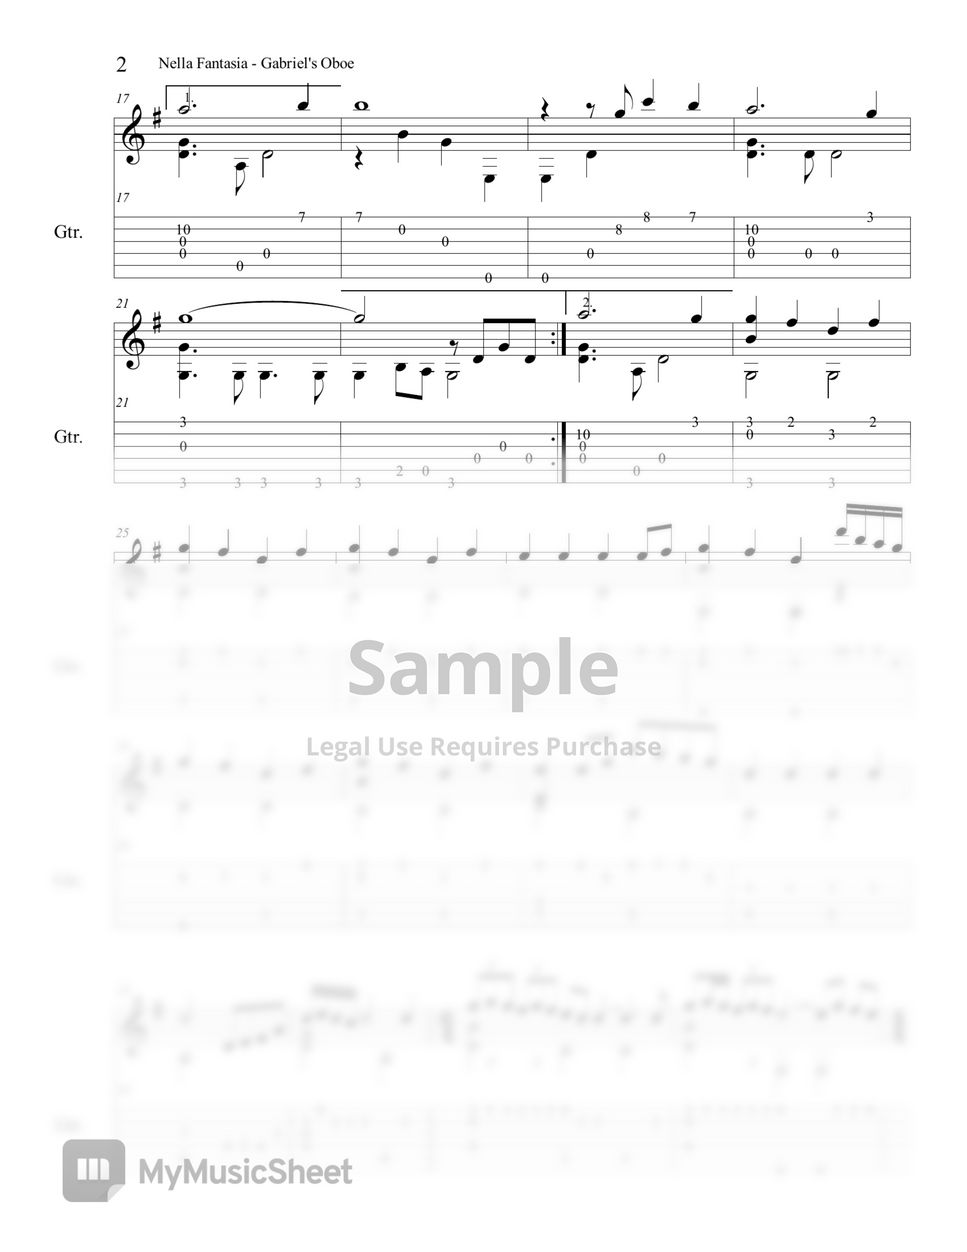 Gabriel'S Oboe - Nella Fantasia - Gabriel'S Oboe - Nella Fantasia  ('Mission' Ost-Ennio Morricone) (Guitar Tab) Tab + 1Staff By Woojeong Park